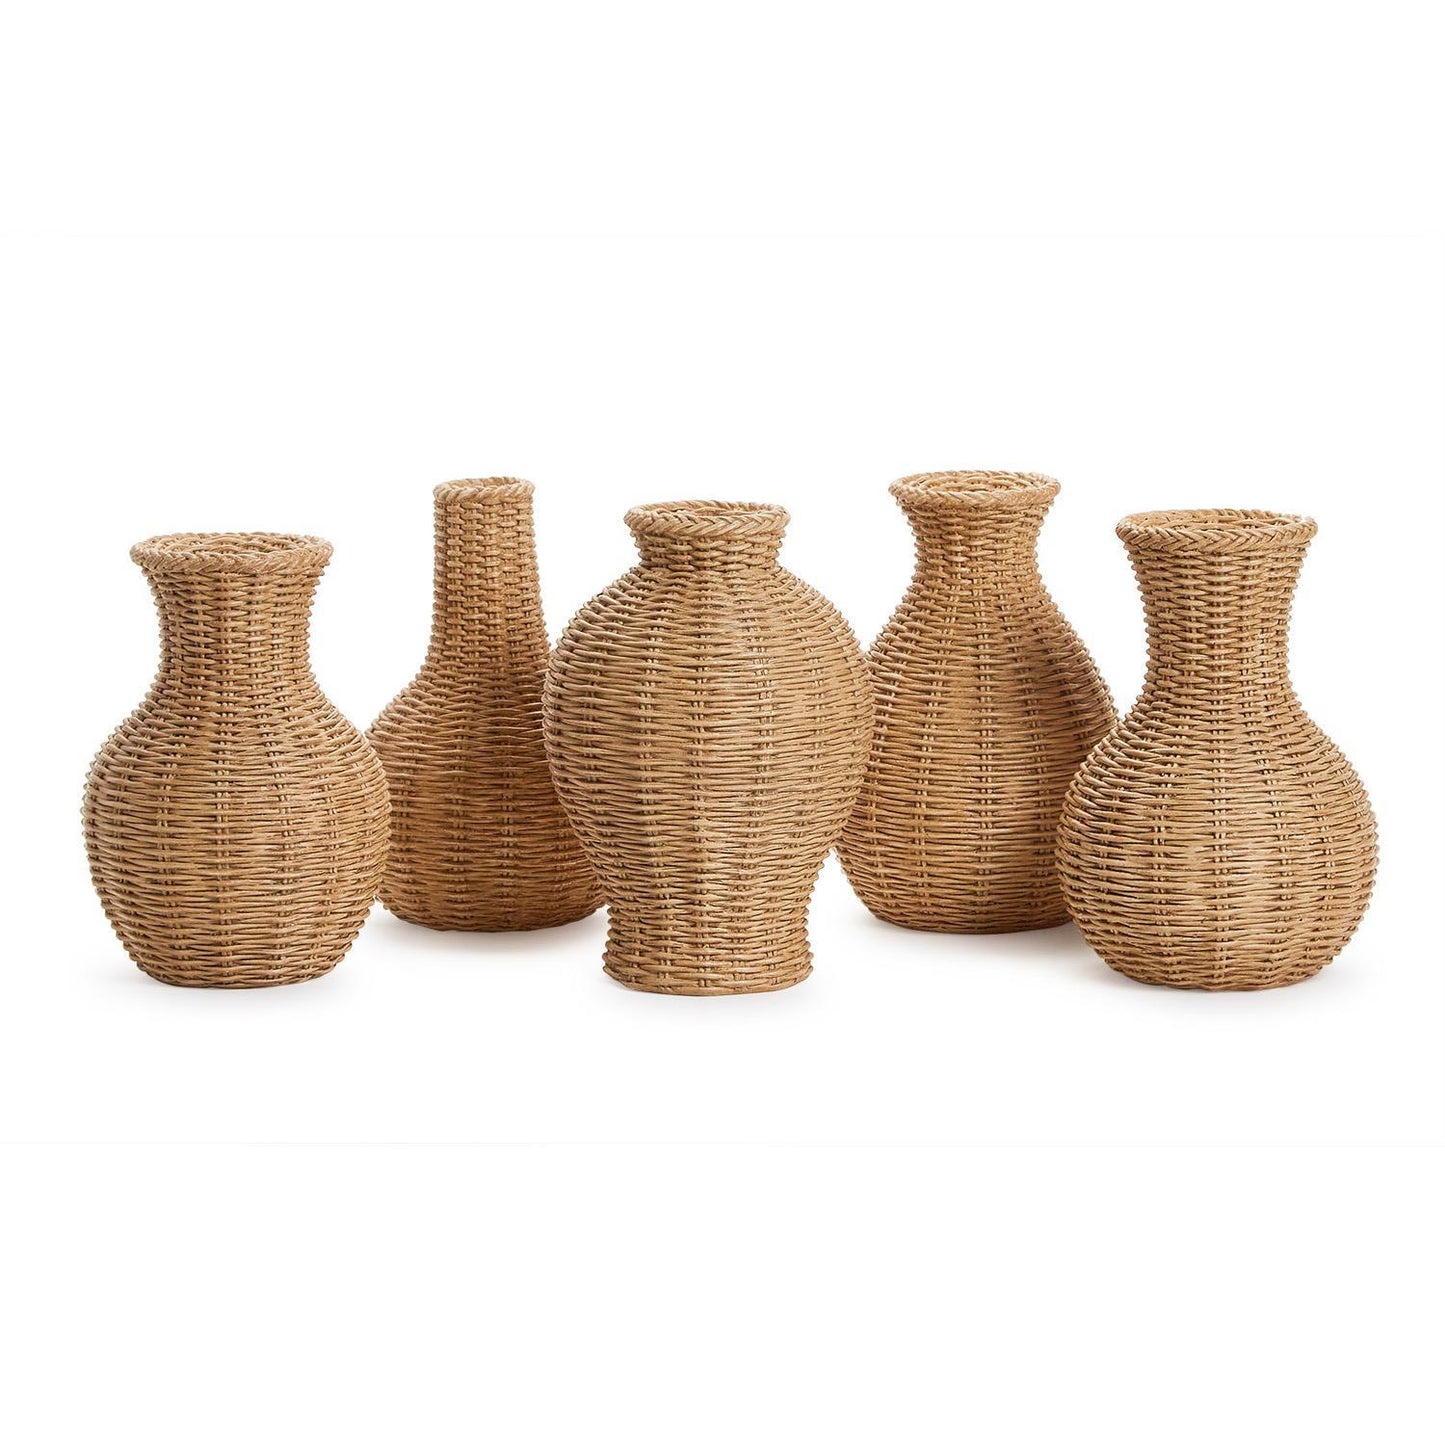 Basket Weave Pattern Vases Natural